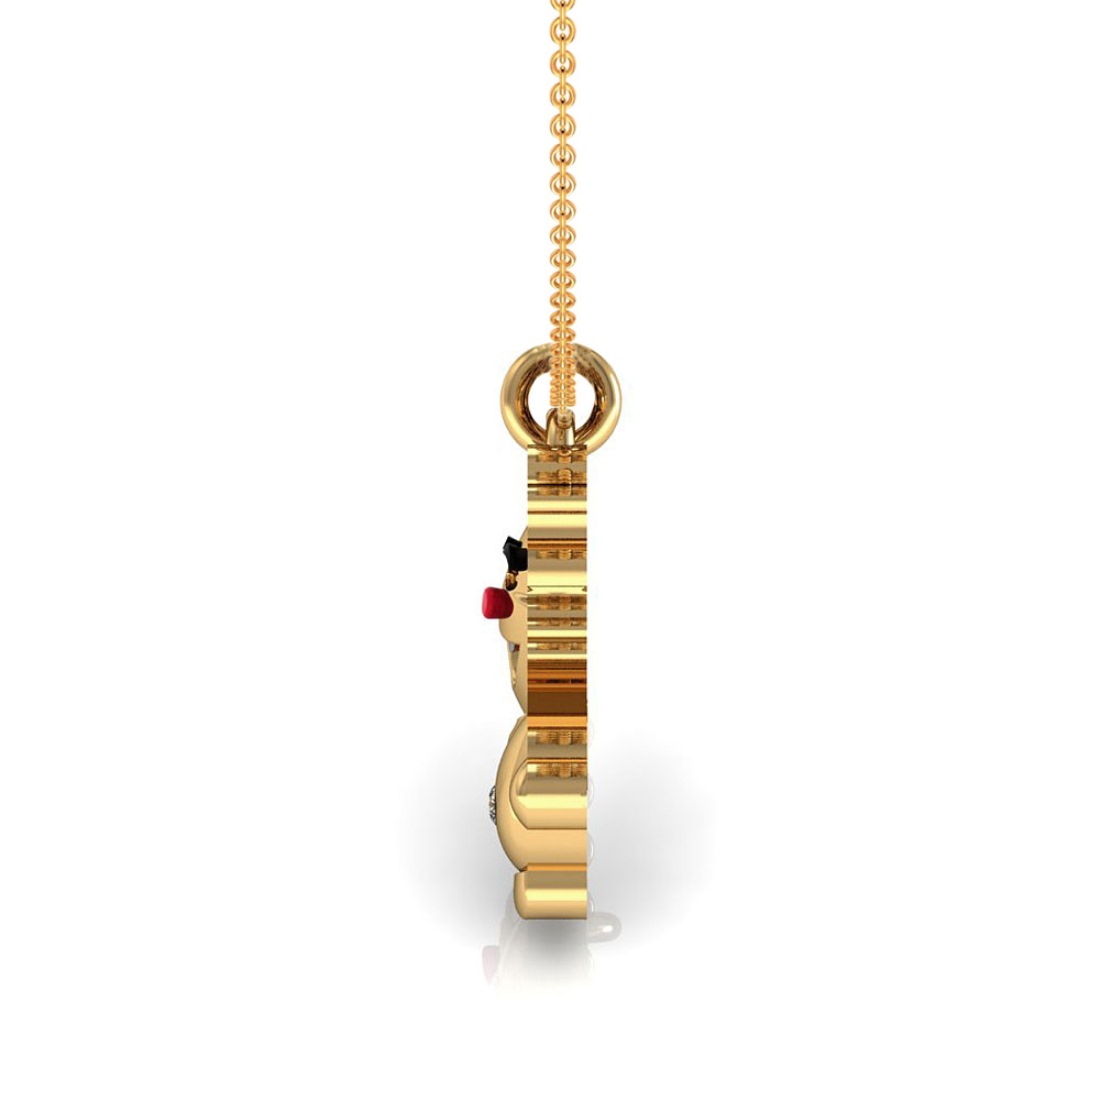 Joker kids pendant with chain 18k gold diamond enamel jewelry